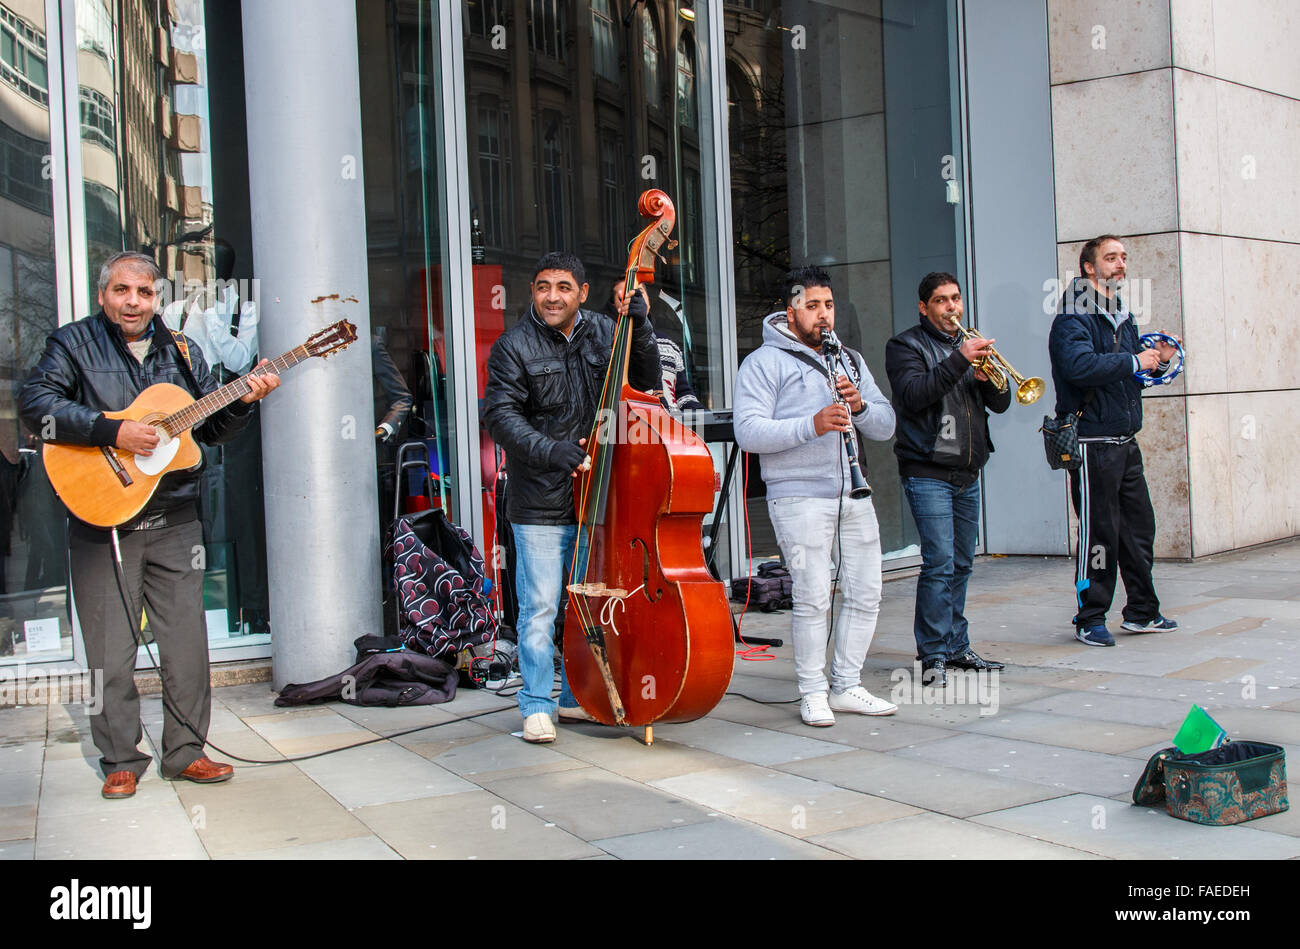 Groupe de musique de rue chilienne de la rue dans le centre de Manchester Banque D'Images